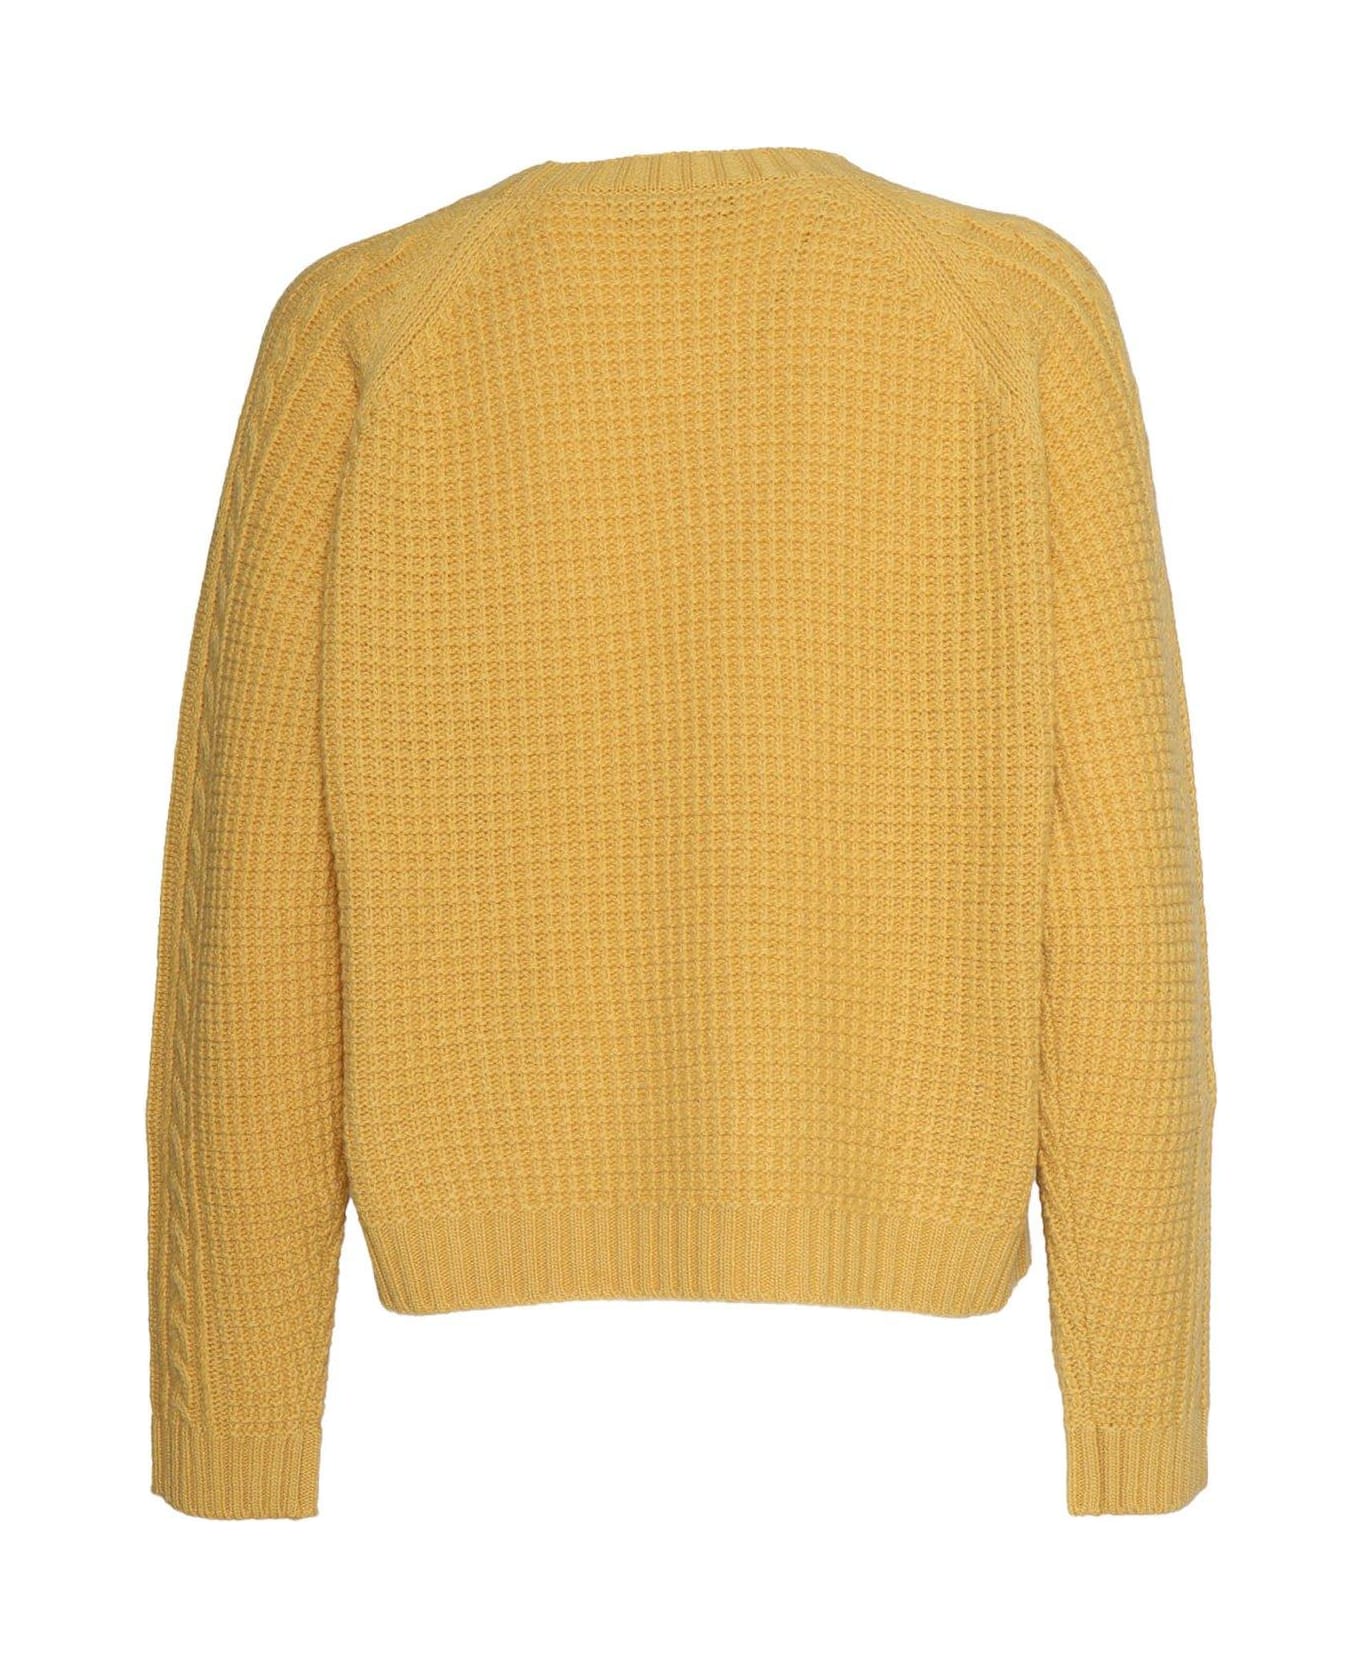 Weekend Max Mara Elid Sweater - Yellow